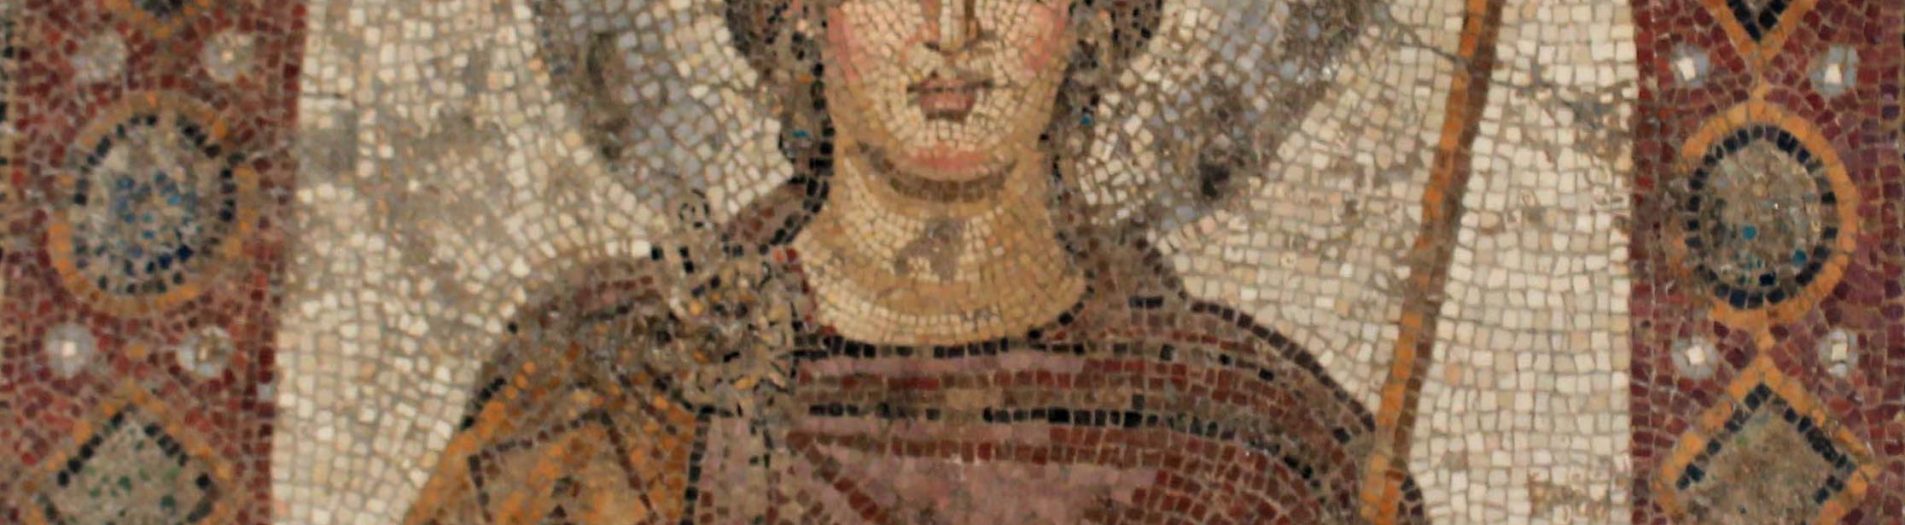 La mosaïque de la dame de Carthage